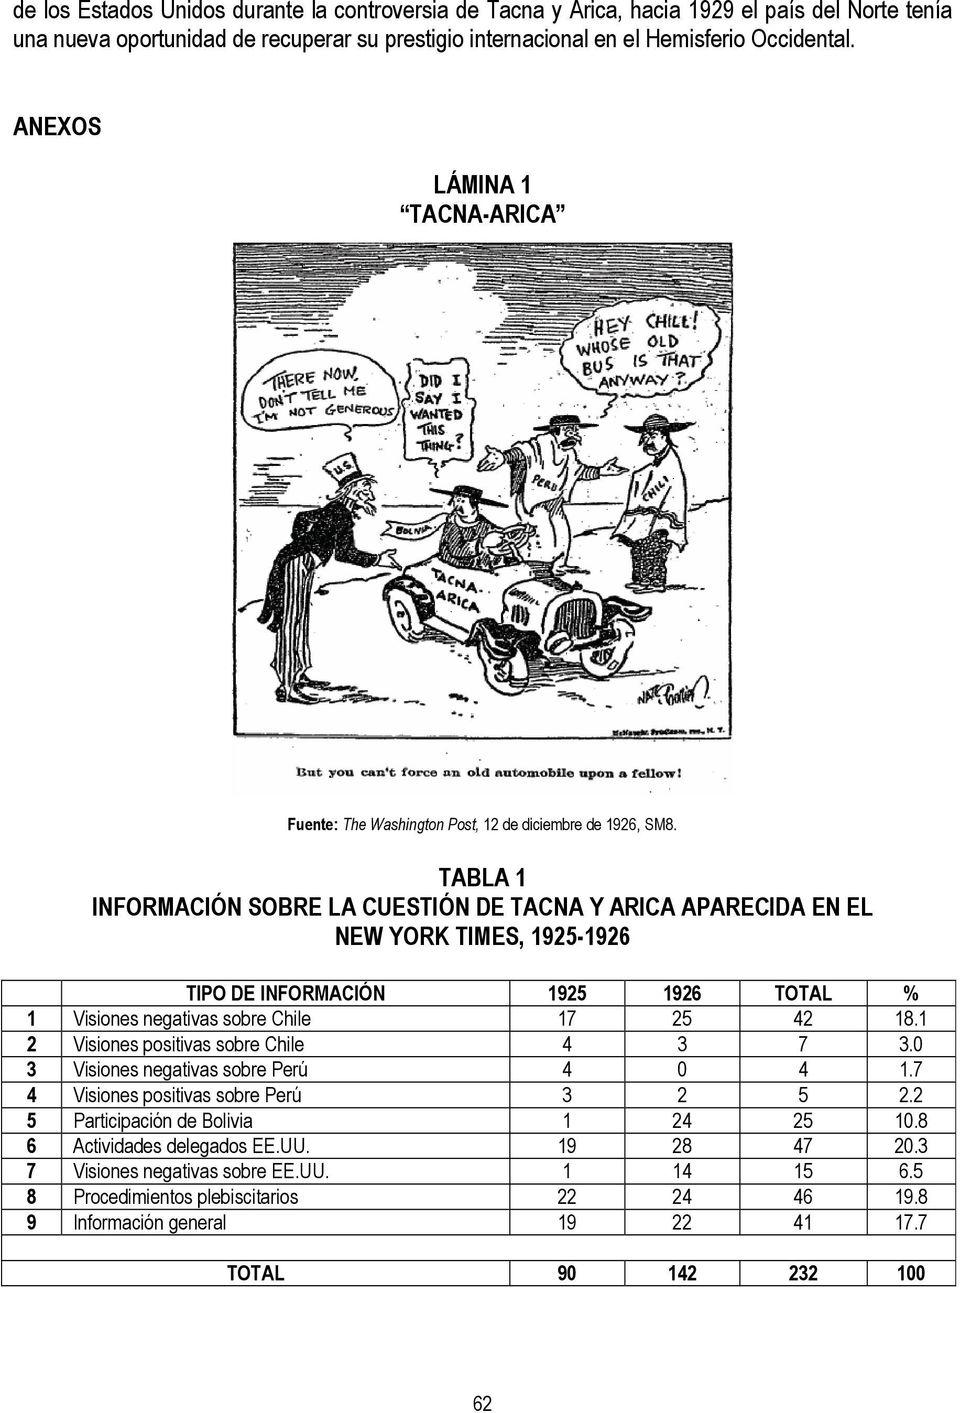 TABLA 1 INFORMACIÓN SOBRE LA CUESTIÓN DE TACNA Y ARICA APARECIDA EN EL NEW YORK TIMES, 1925-1926 TIPO DE INFORMACIÓN 1925 1926 TOTAL % 1 Visiones negativas sobre Chile 17 25 42 18.